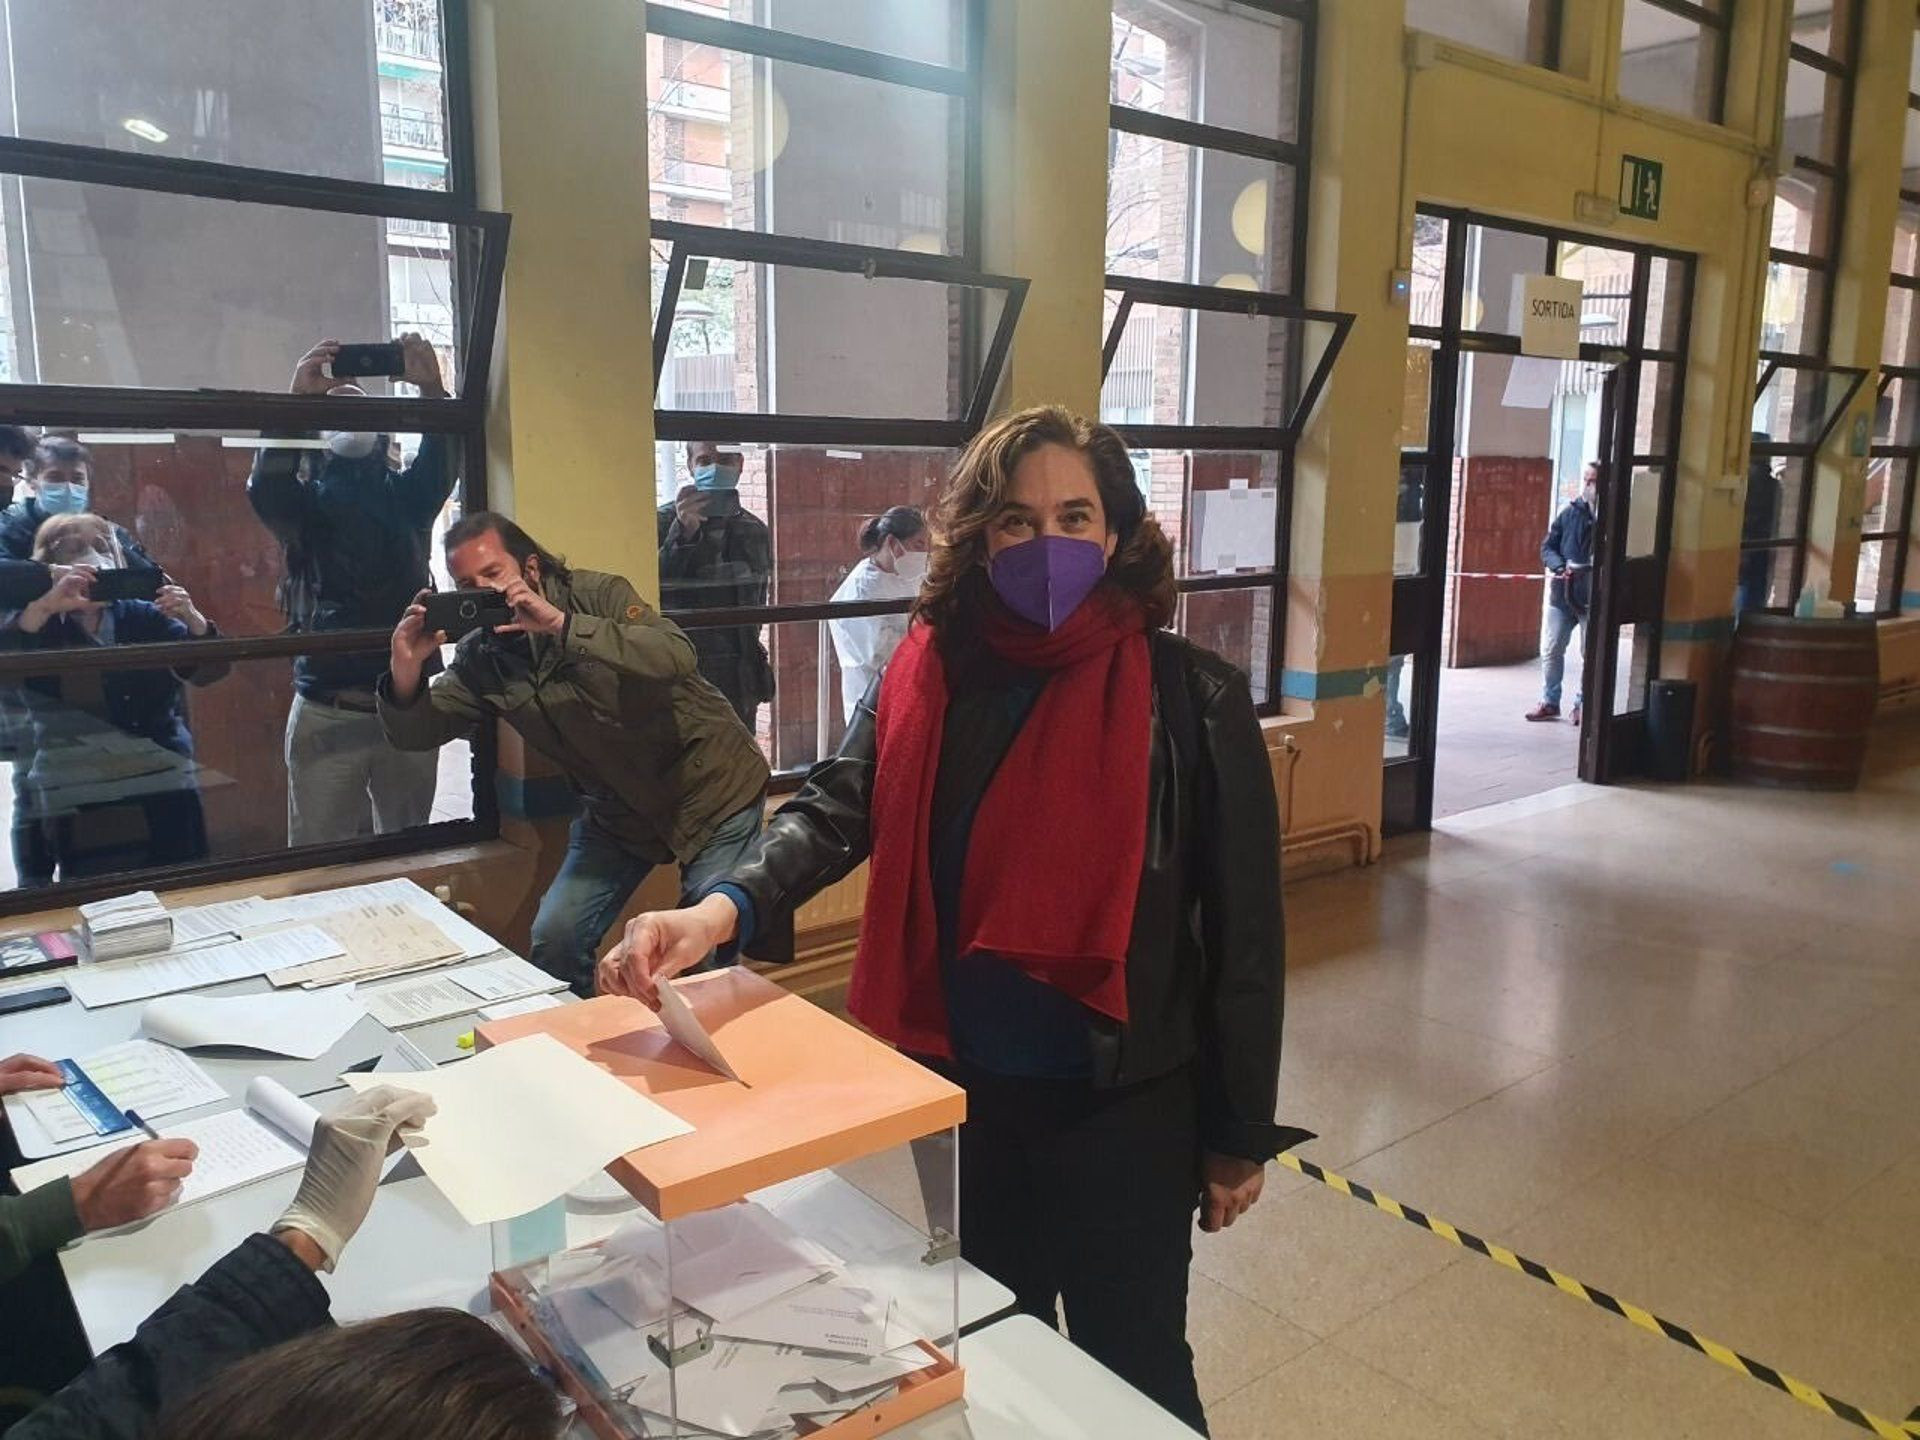 La alcaldesa Ada Colau en su colegio electoral en Barcelona para votar en unas elecciones al Parlament de Catalunya / @ADACOLAU